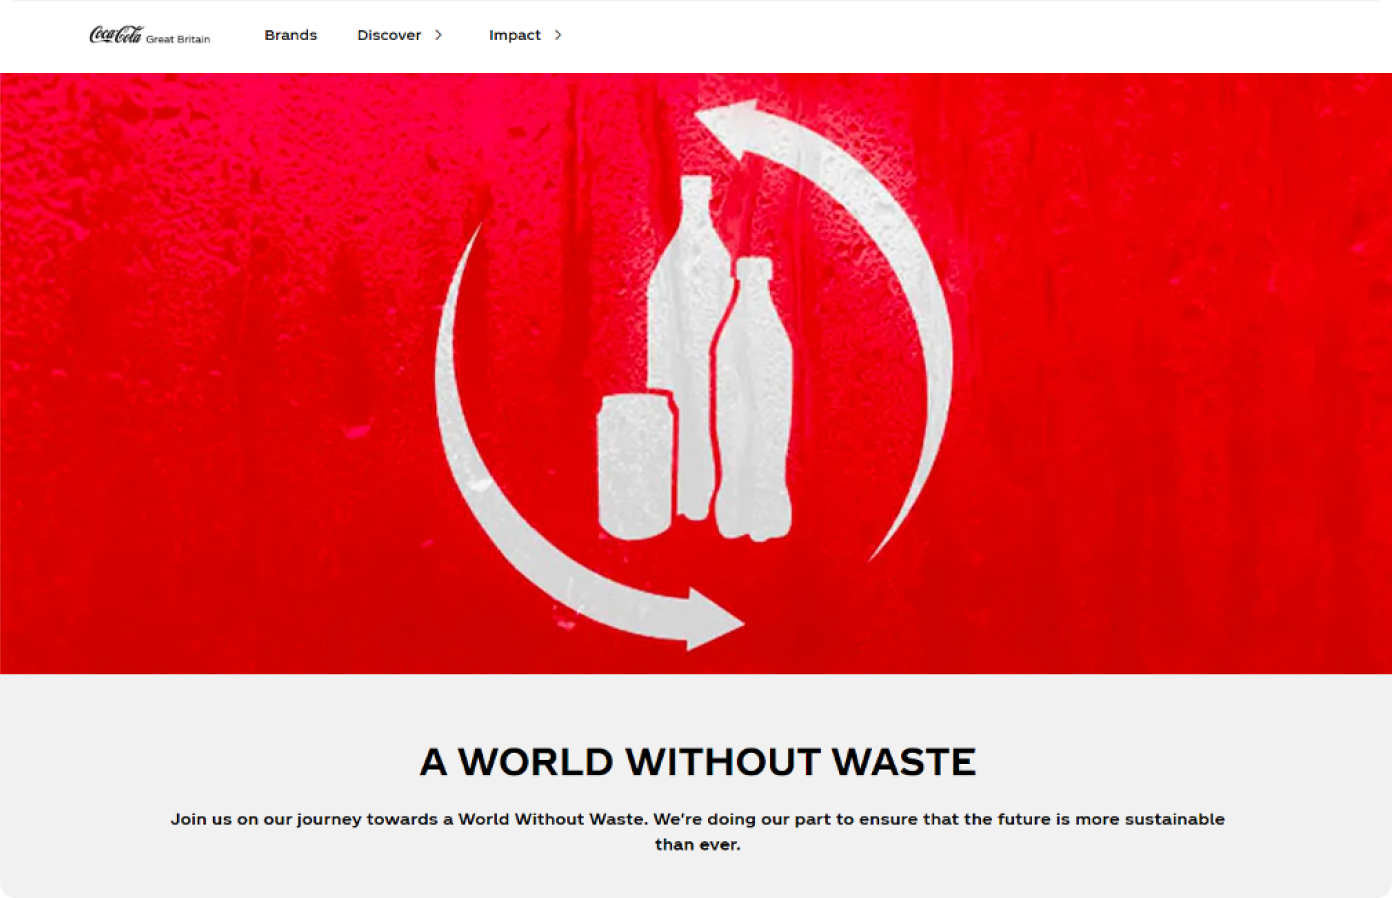 В настоящий момент Coca-Cola реализует множество эко-инициатив. Например, бренд стремится сократить объем выброшенной тары и объявляет о намерении к 2030 году переработать одну бутылку или банку из каждой проданной упаковки.